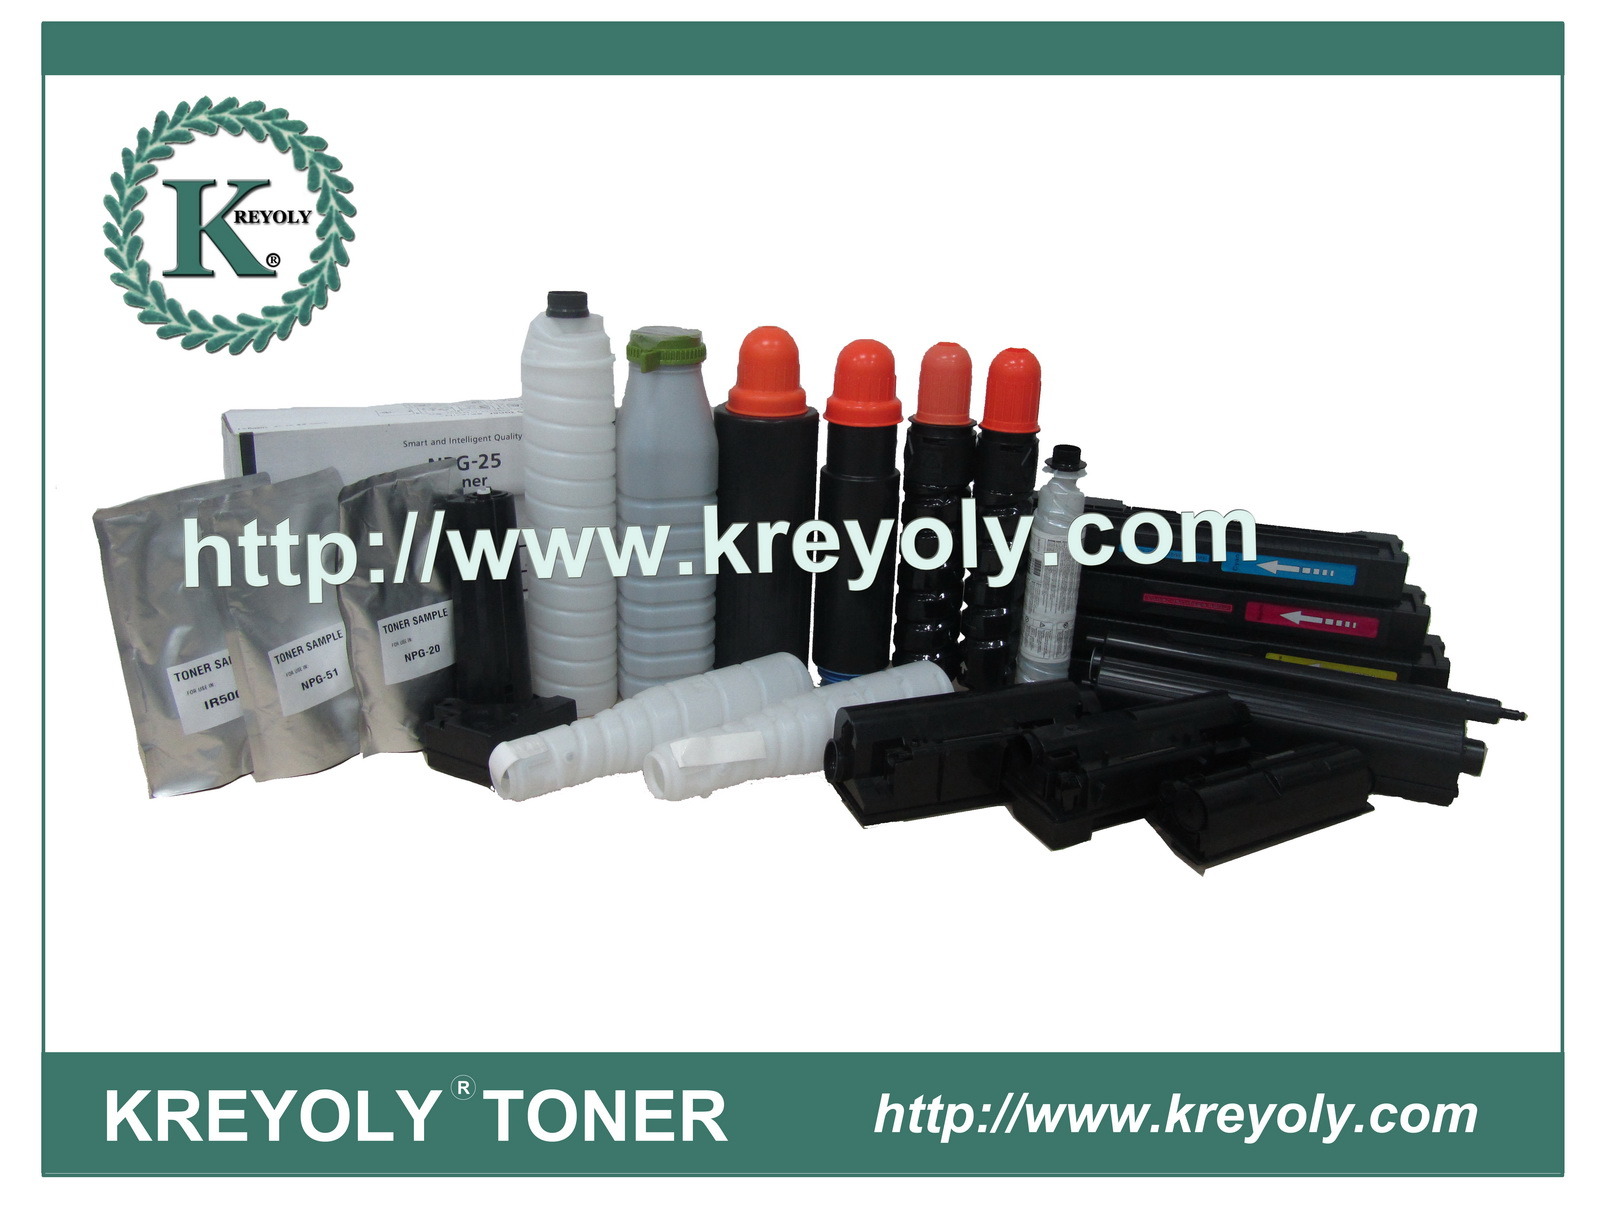 100% Compatible Toner Cartridge for Konica Minolta TNP22